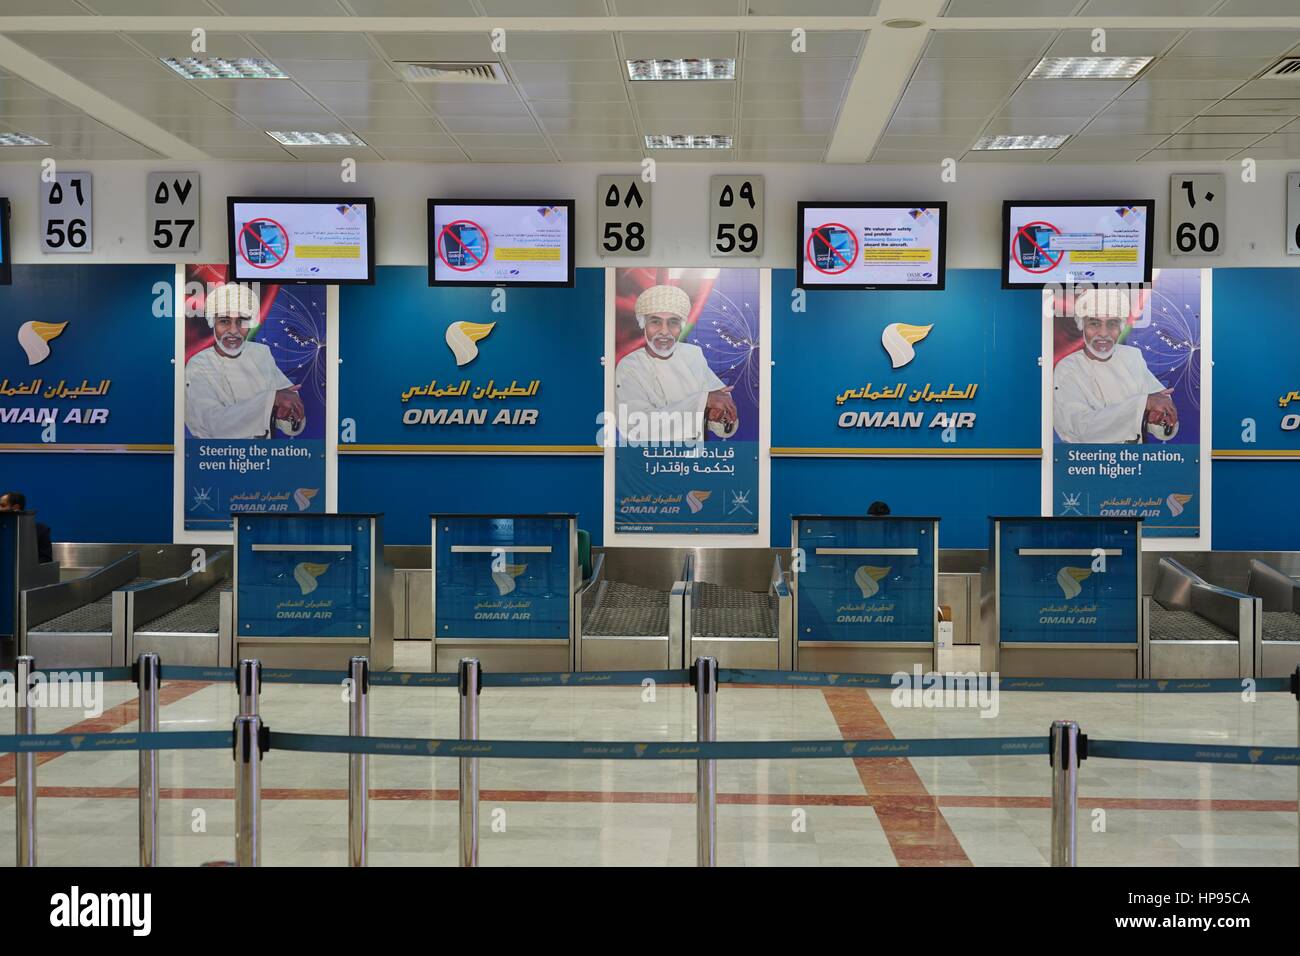 Ansicht von Muscat International Airport (MCT), ehemals Seeb International Airport. Es ist der wichtigste Flughafen in Oman und die Drehscheibe für Oman Air. Stockfoto